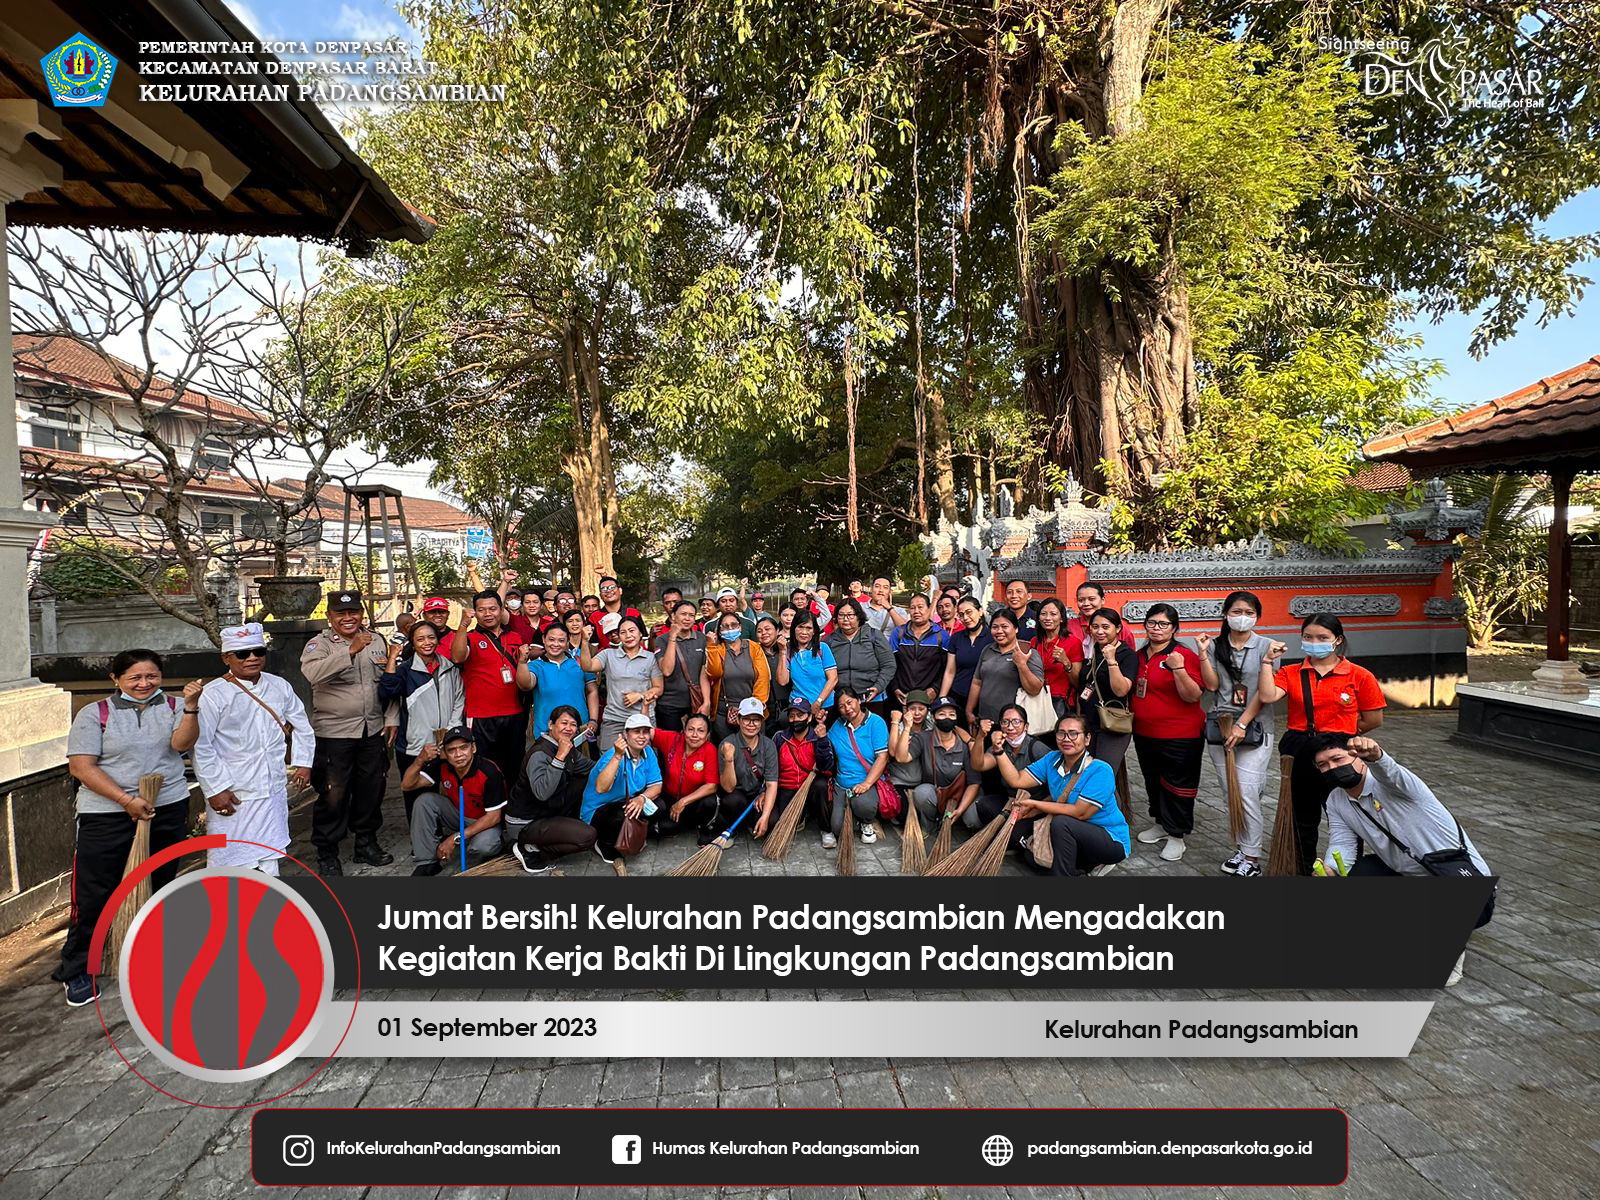 Jumat Bersih! Kelurahan Padangsambian Mengadakan Kerja Bakti Di Wilayah Lingkungan Padangsambian